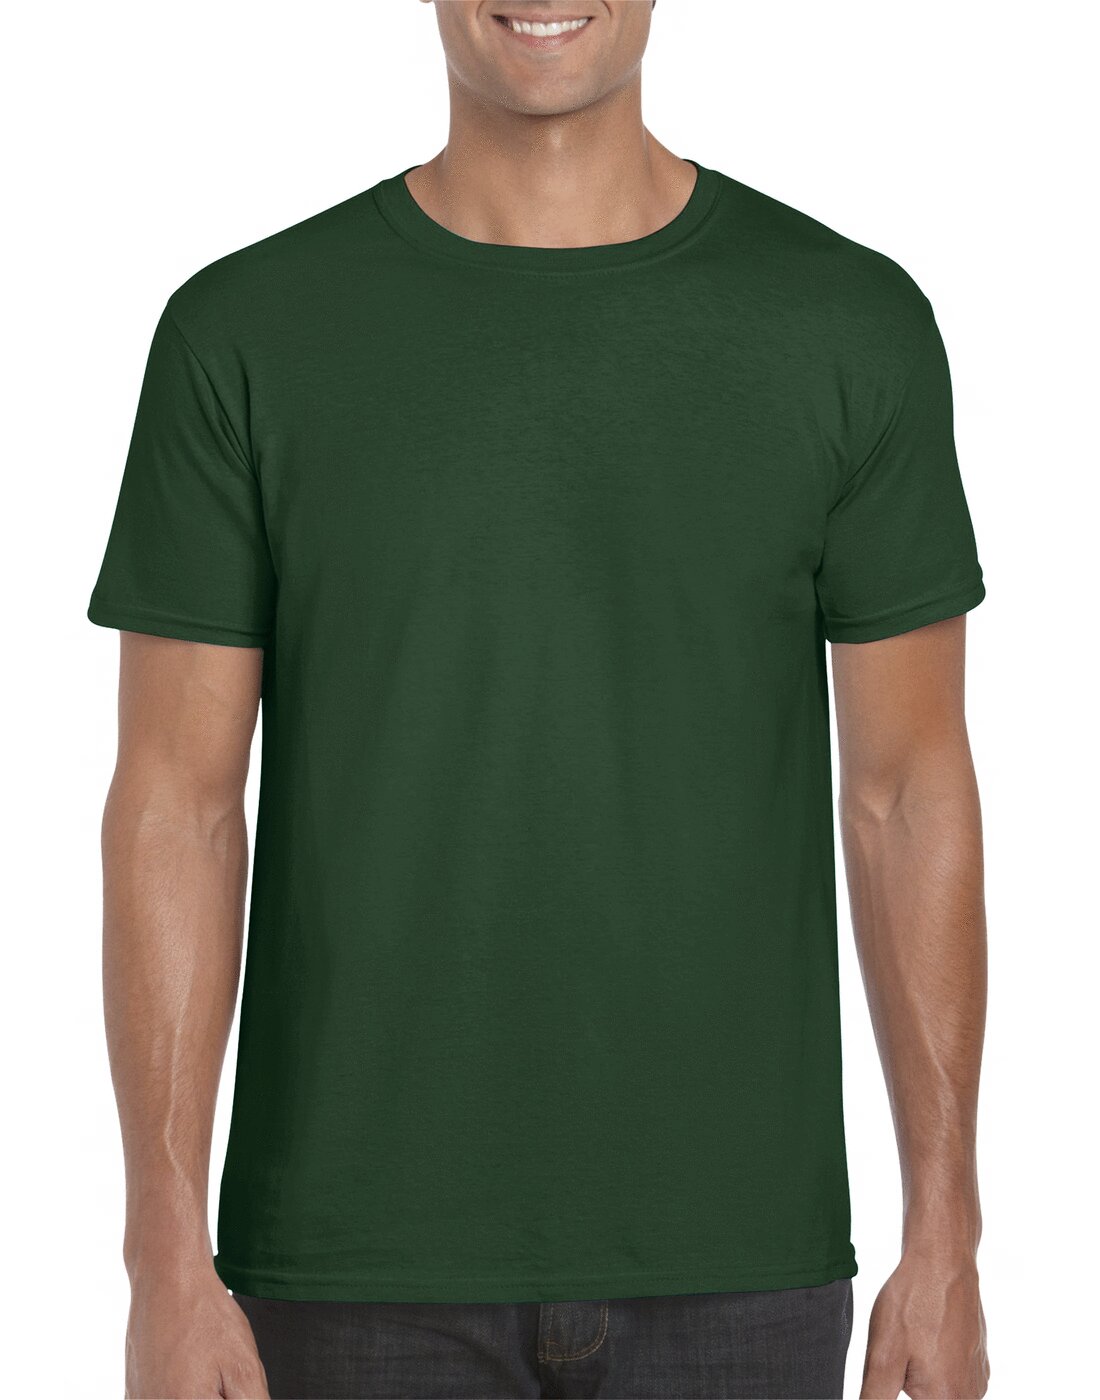 Gildan Adult Softstyle Ringspun T-Shirt - GD01 - Forest Green